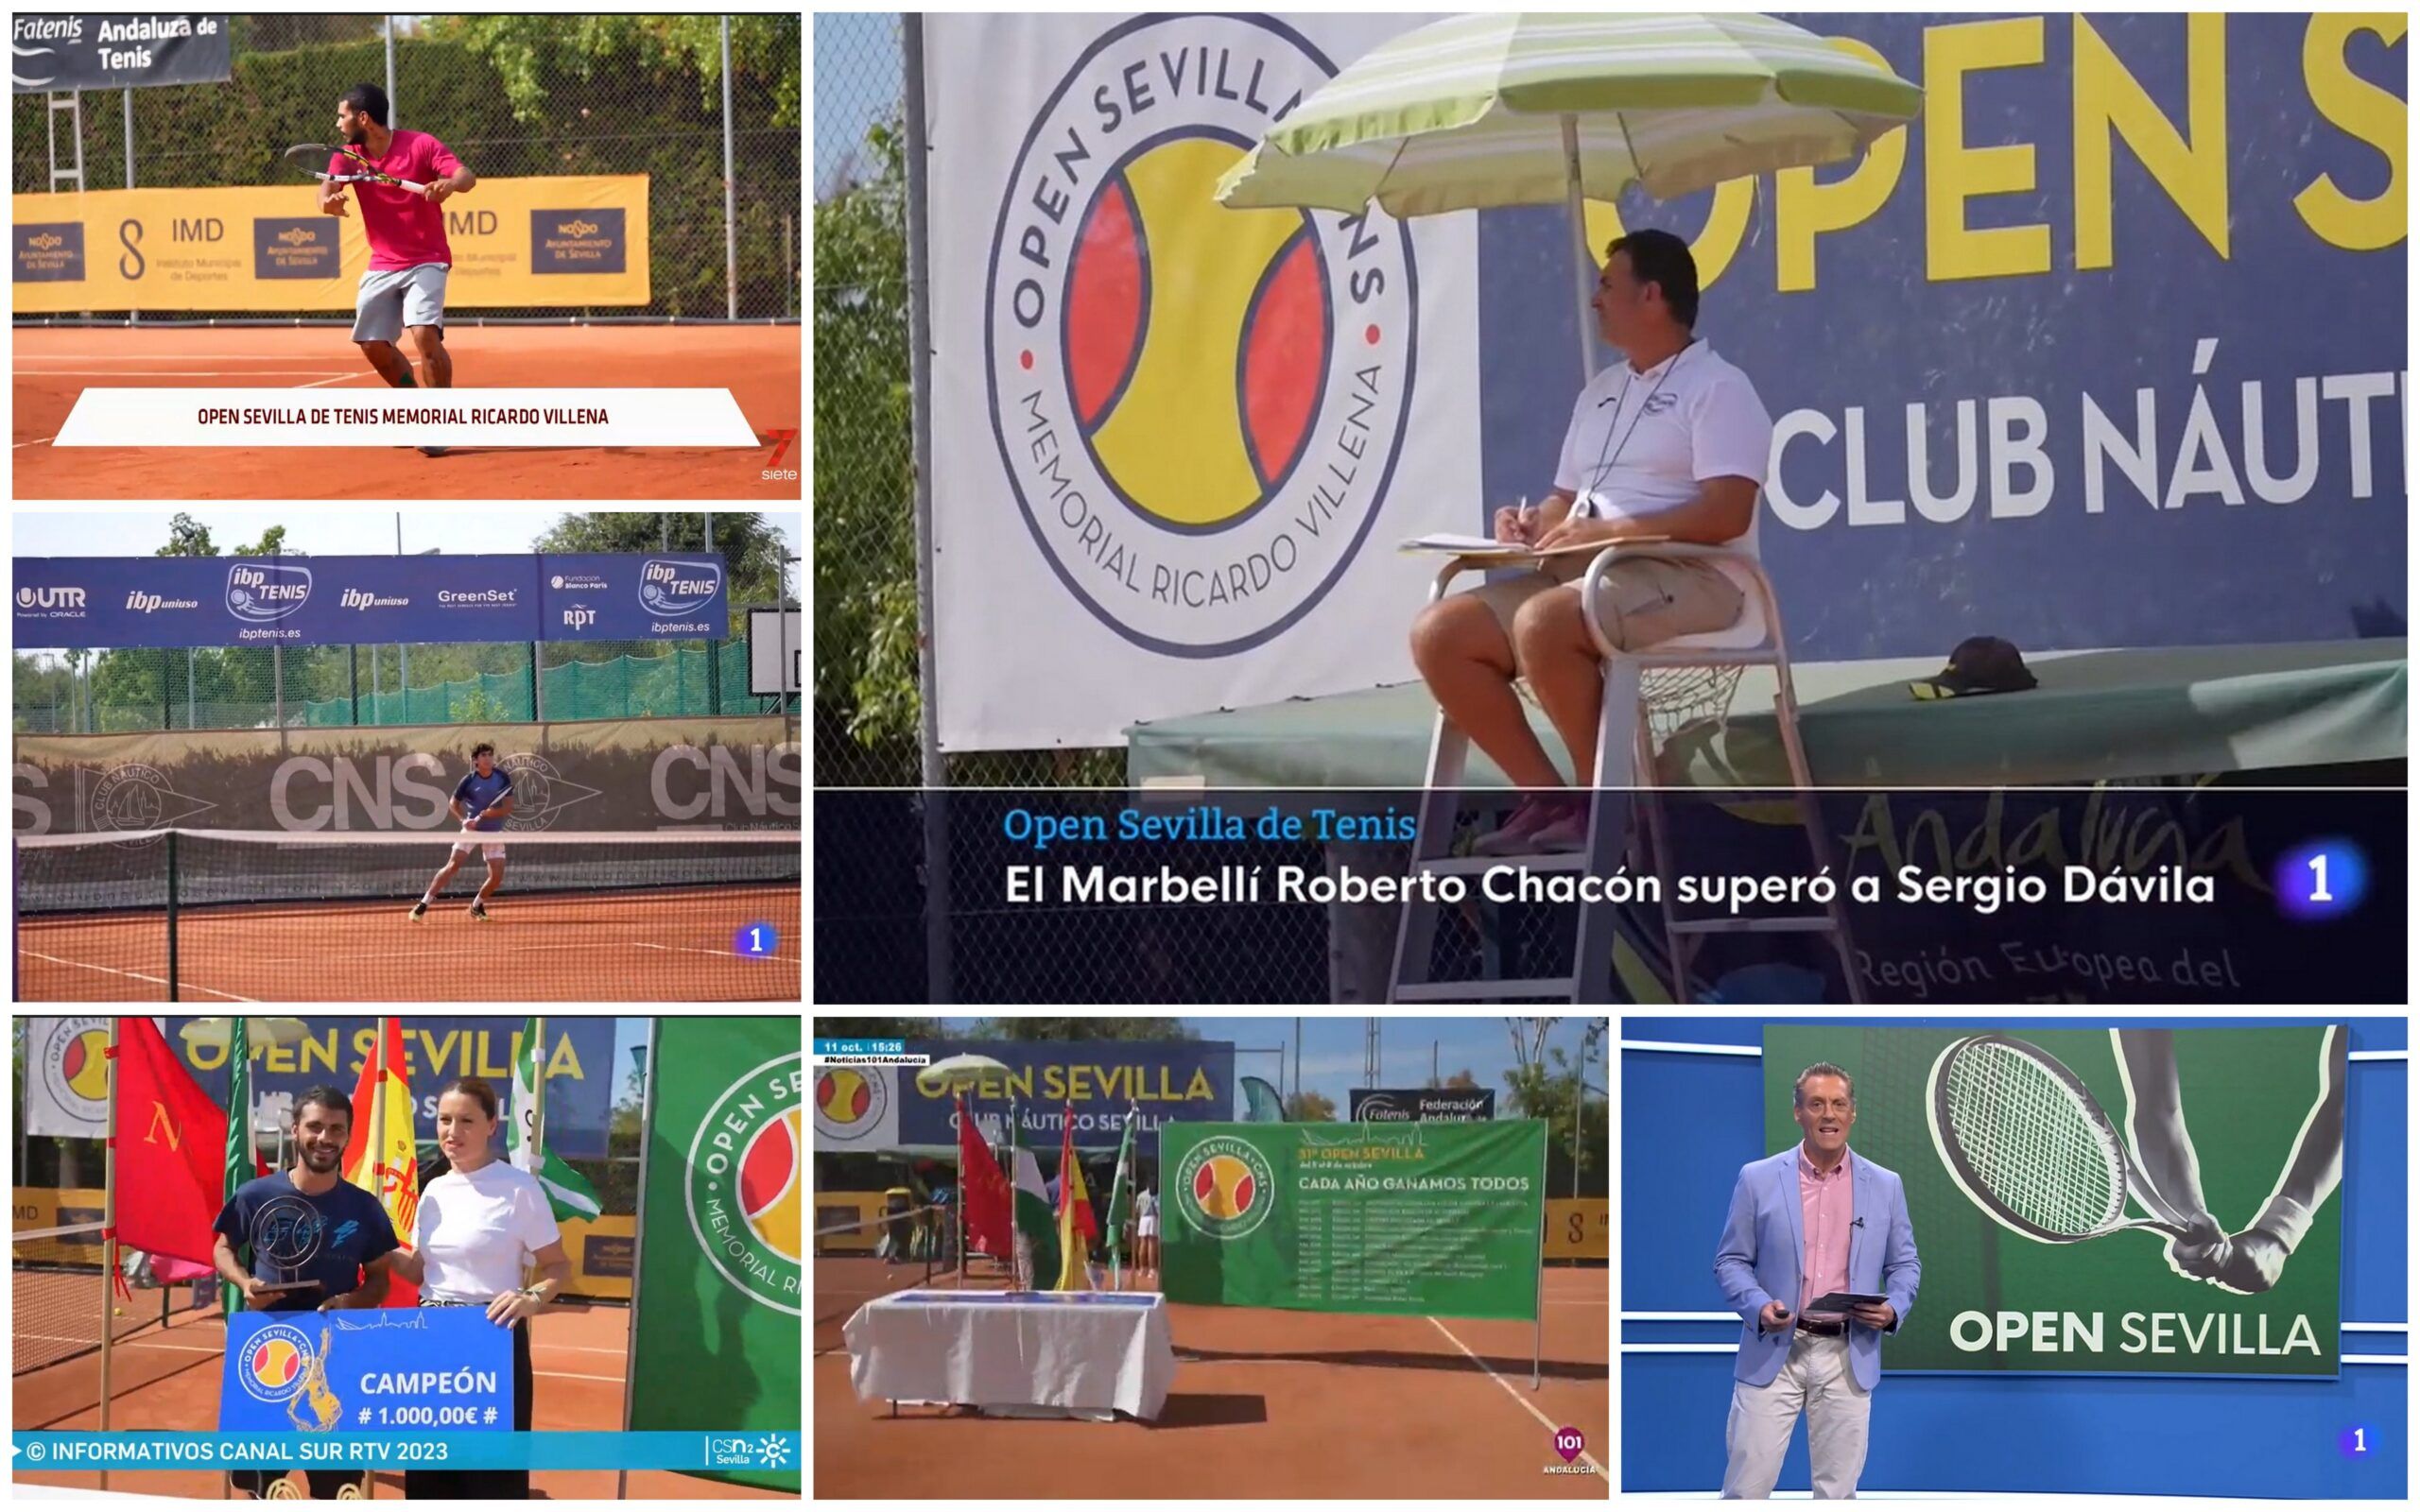 El Open Sevilla de tenis Memorial Ricardo Villena, en los medios